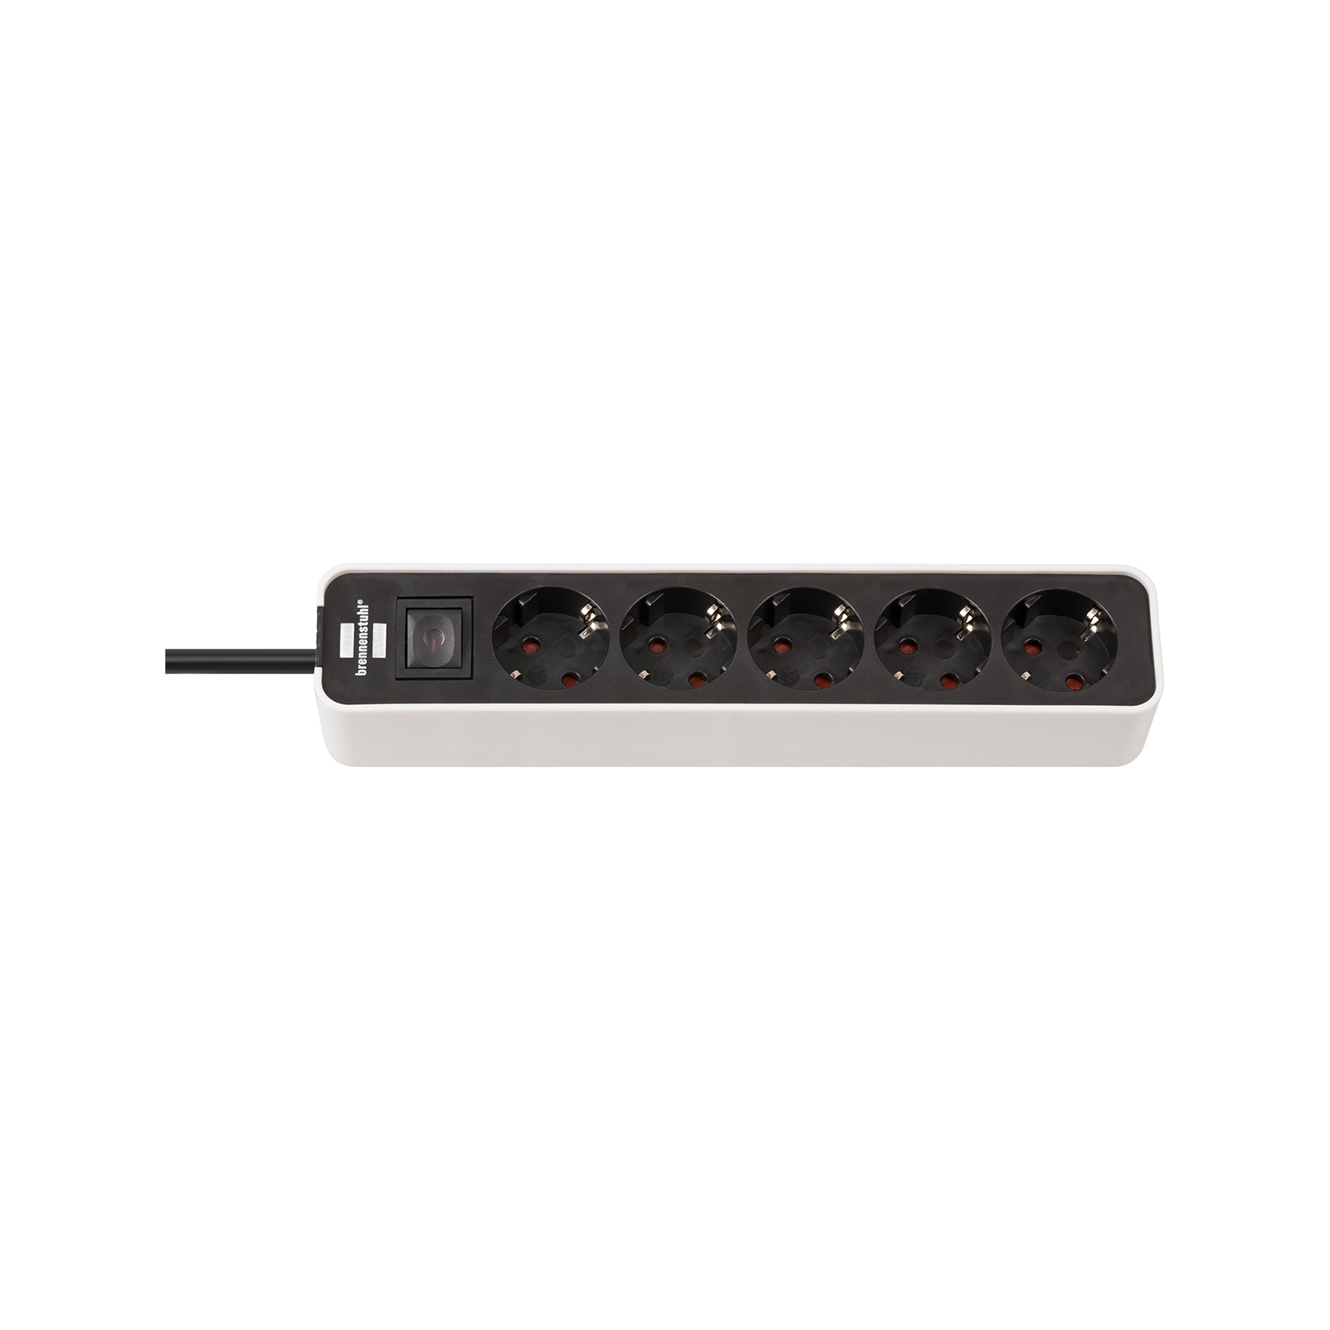 Удлинитель Brennenstuhl Ecolor с переключателем 5 розеток кабель 1,5 м H05VV-F 3G1,5 черно-белый 1153250020